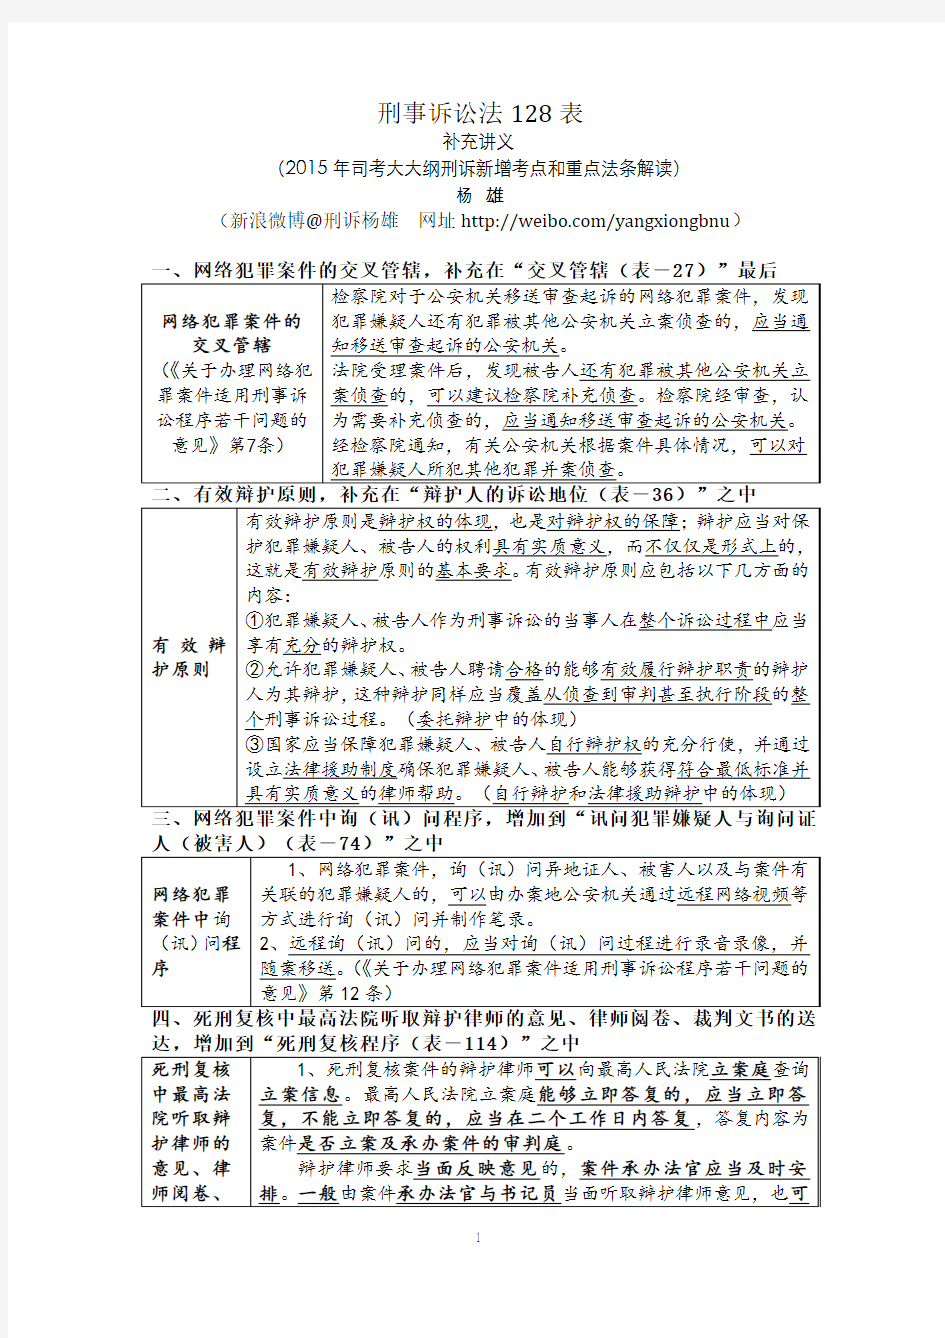 刑诉法128表补充讲义(15年新增考点和重点法条解读)——杨雄 (1)